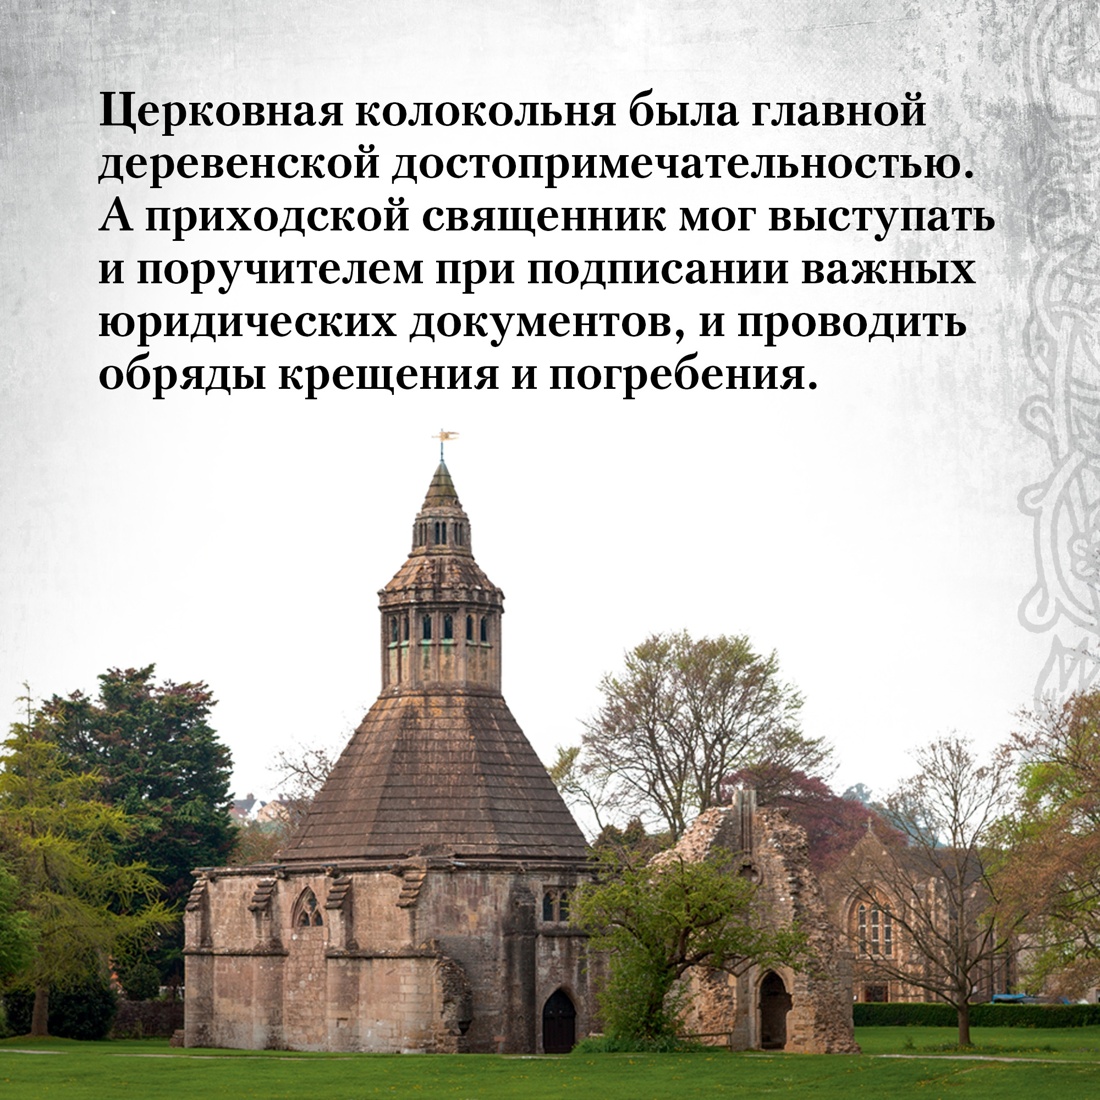 Промо материал к книге "Жизнь в средневековой деревне" №5